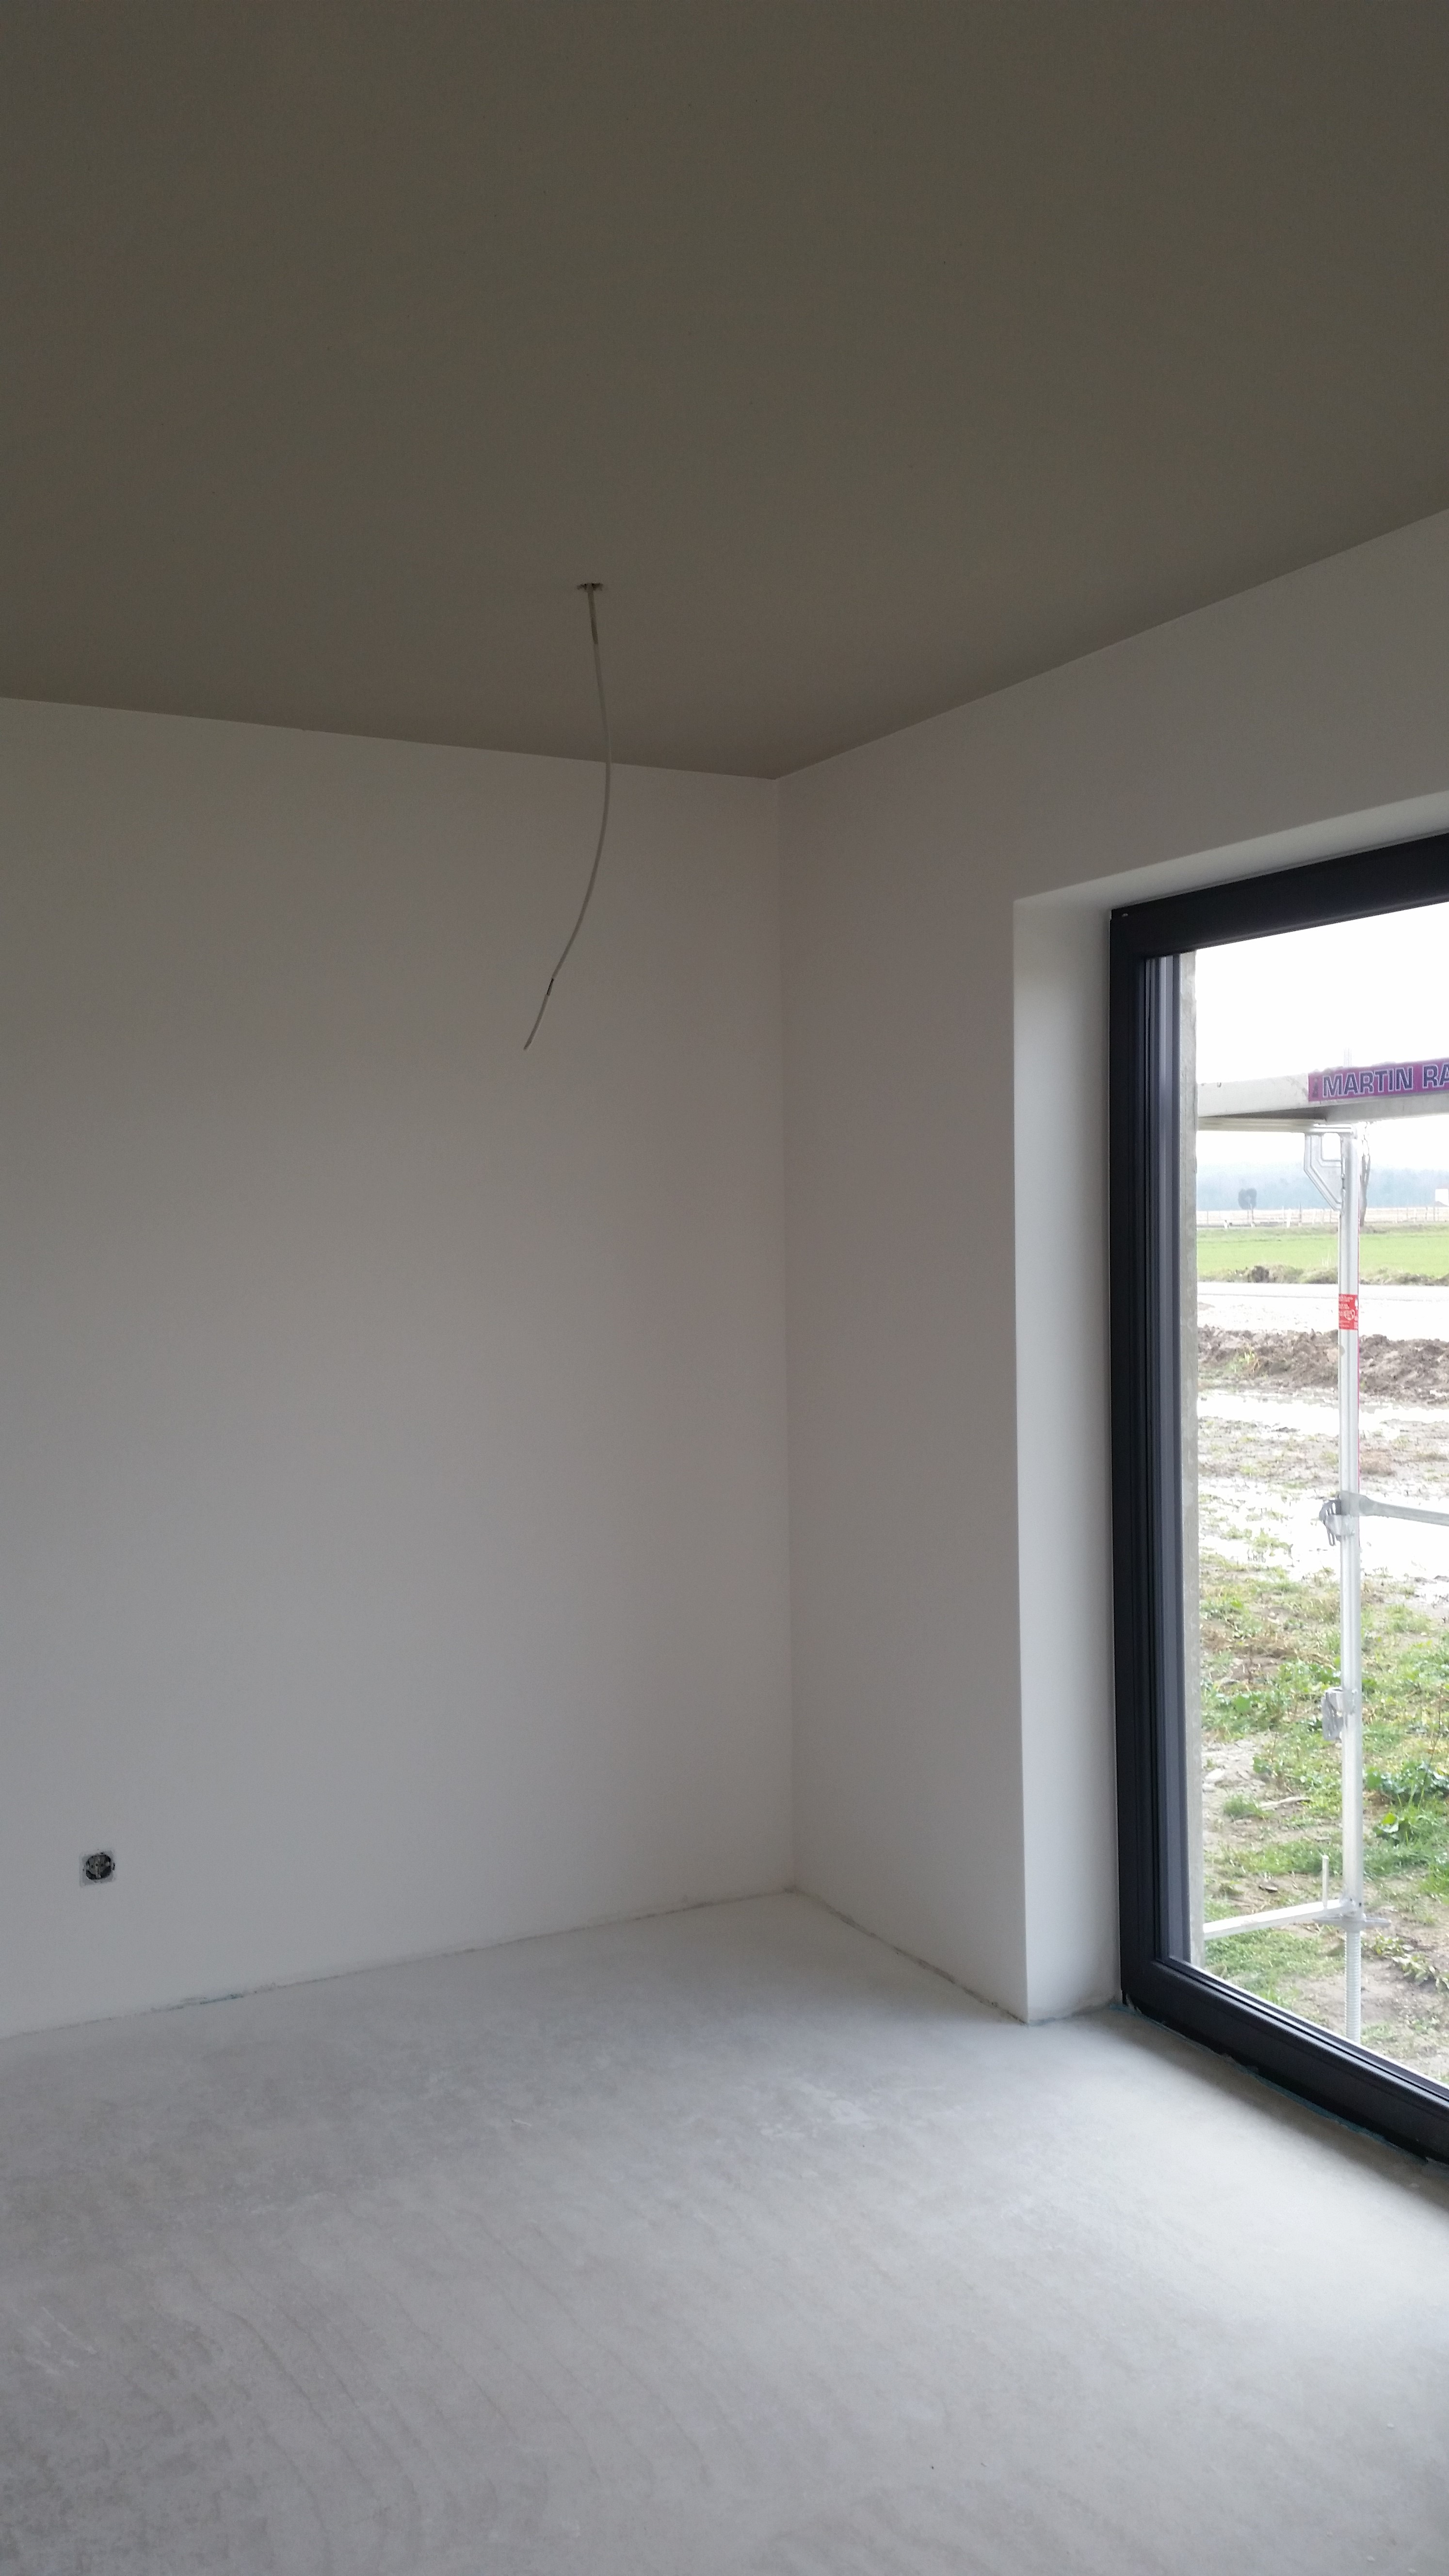 Wohnzimmer: Wände weiß und Decke Grau abgesetzt